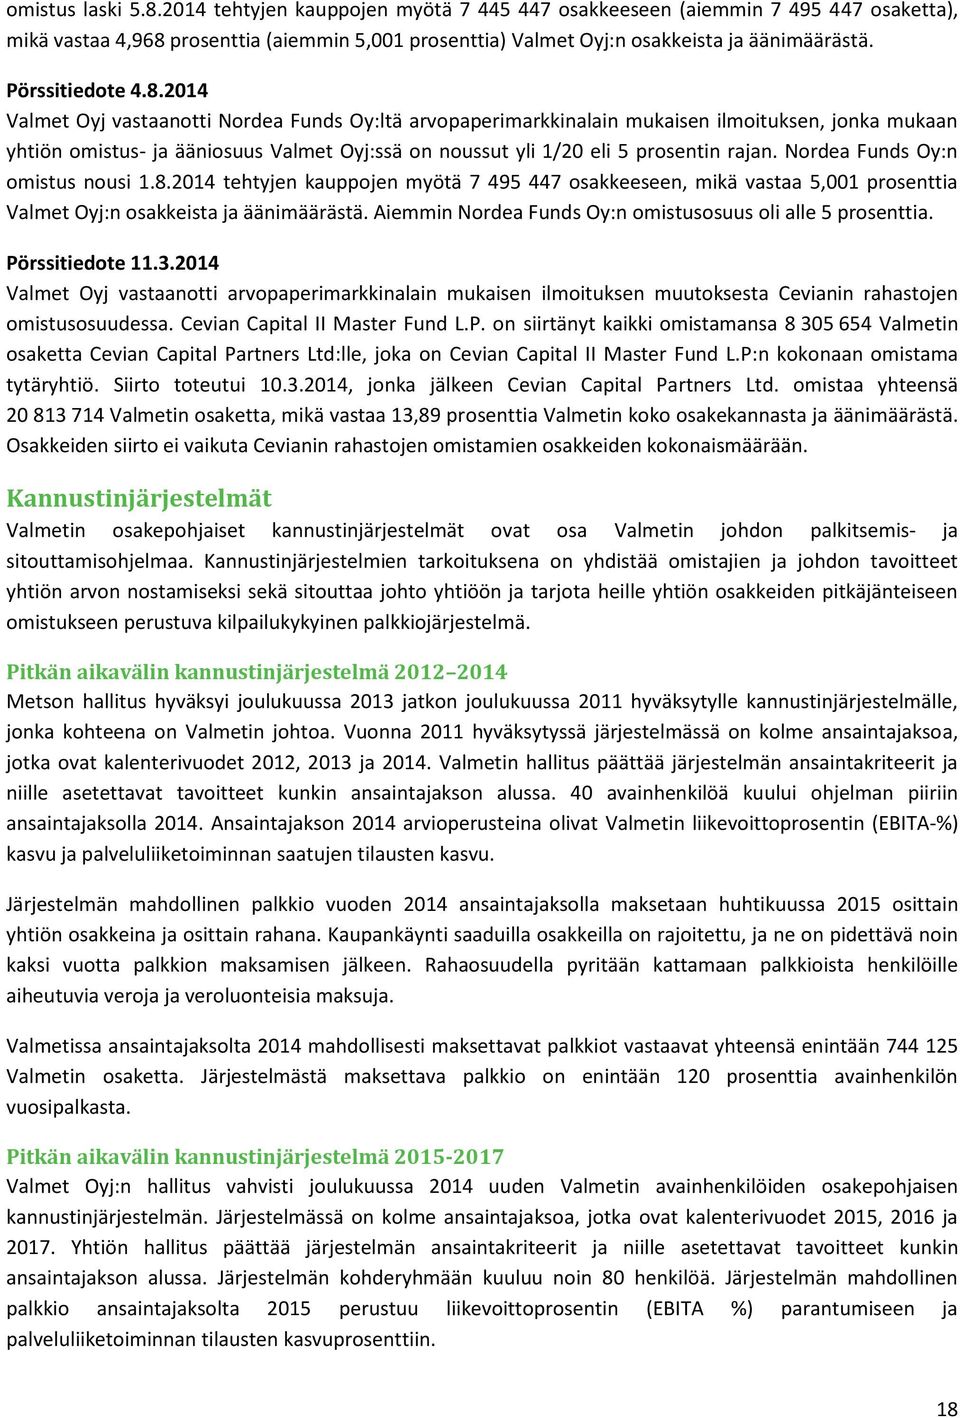 2014 Valmet Oyj vastaanotti Nordea Funds Oy:ltä arvopaperimarkkinalain mukaisen ilmoituksen, jonka mukaan yhtiön omistus- ja ääniosuus Valmet Oyj:ssä on noussut yli 1/20 eli 5 prosentin rajan.